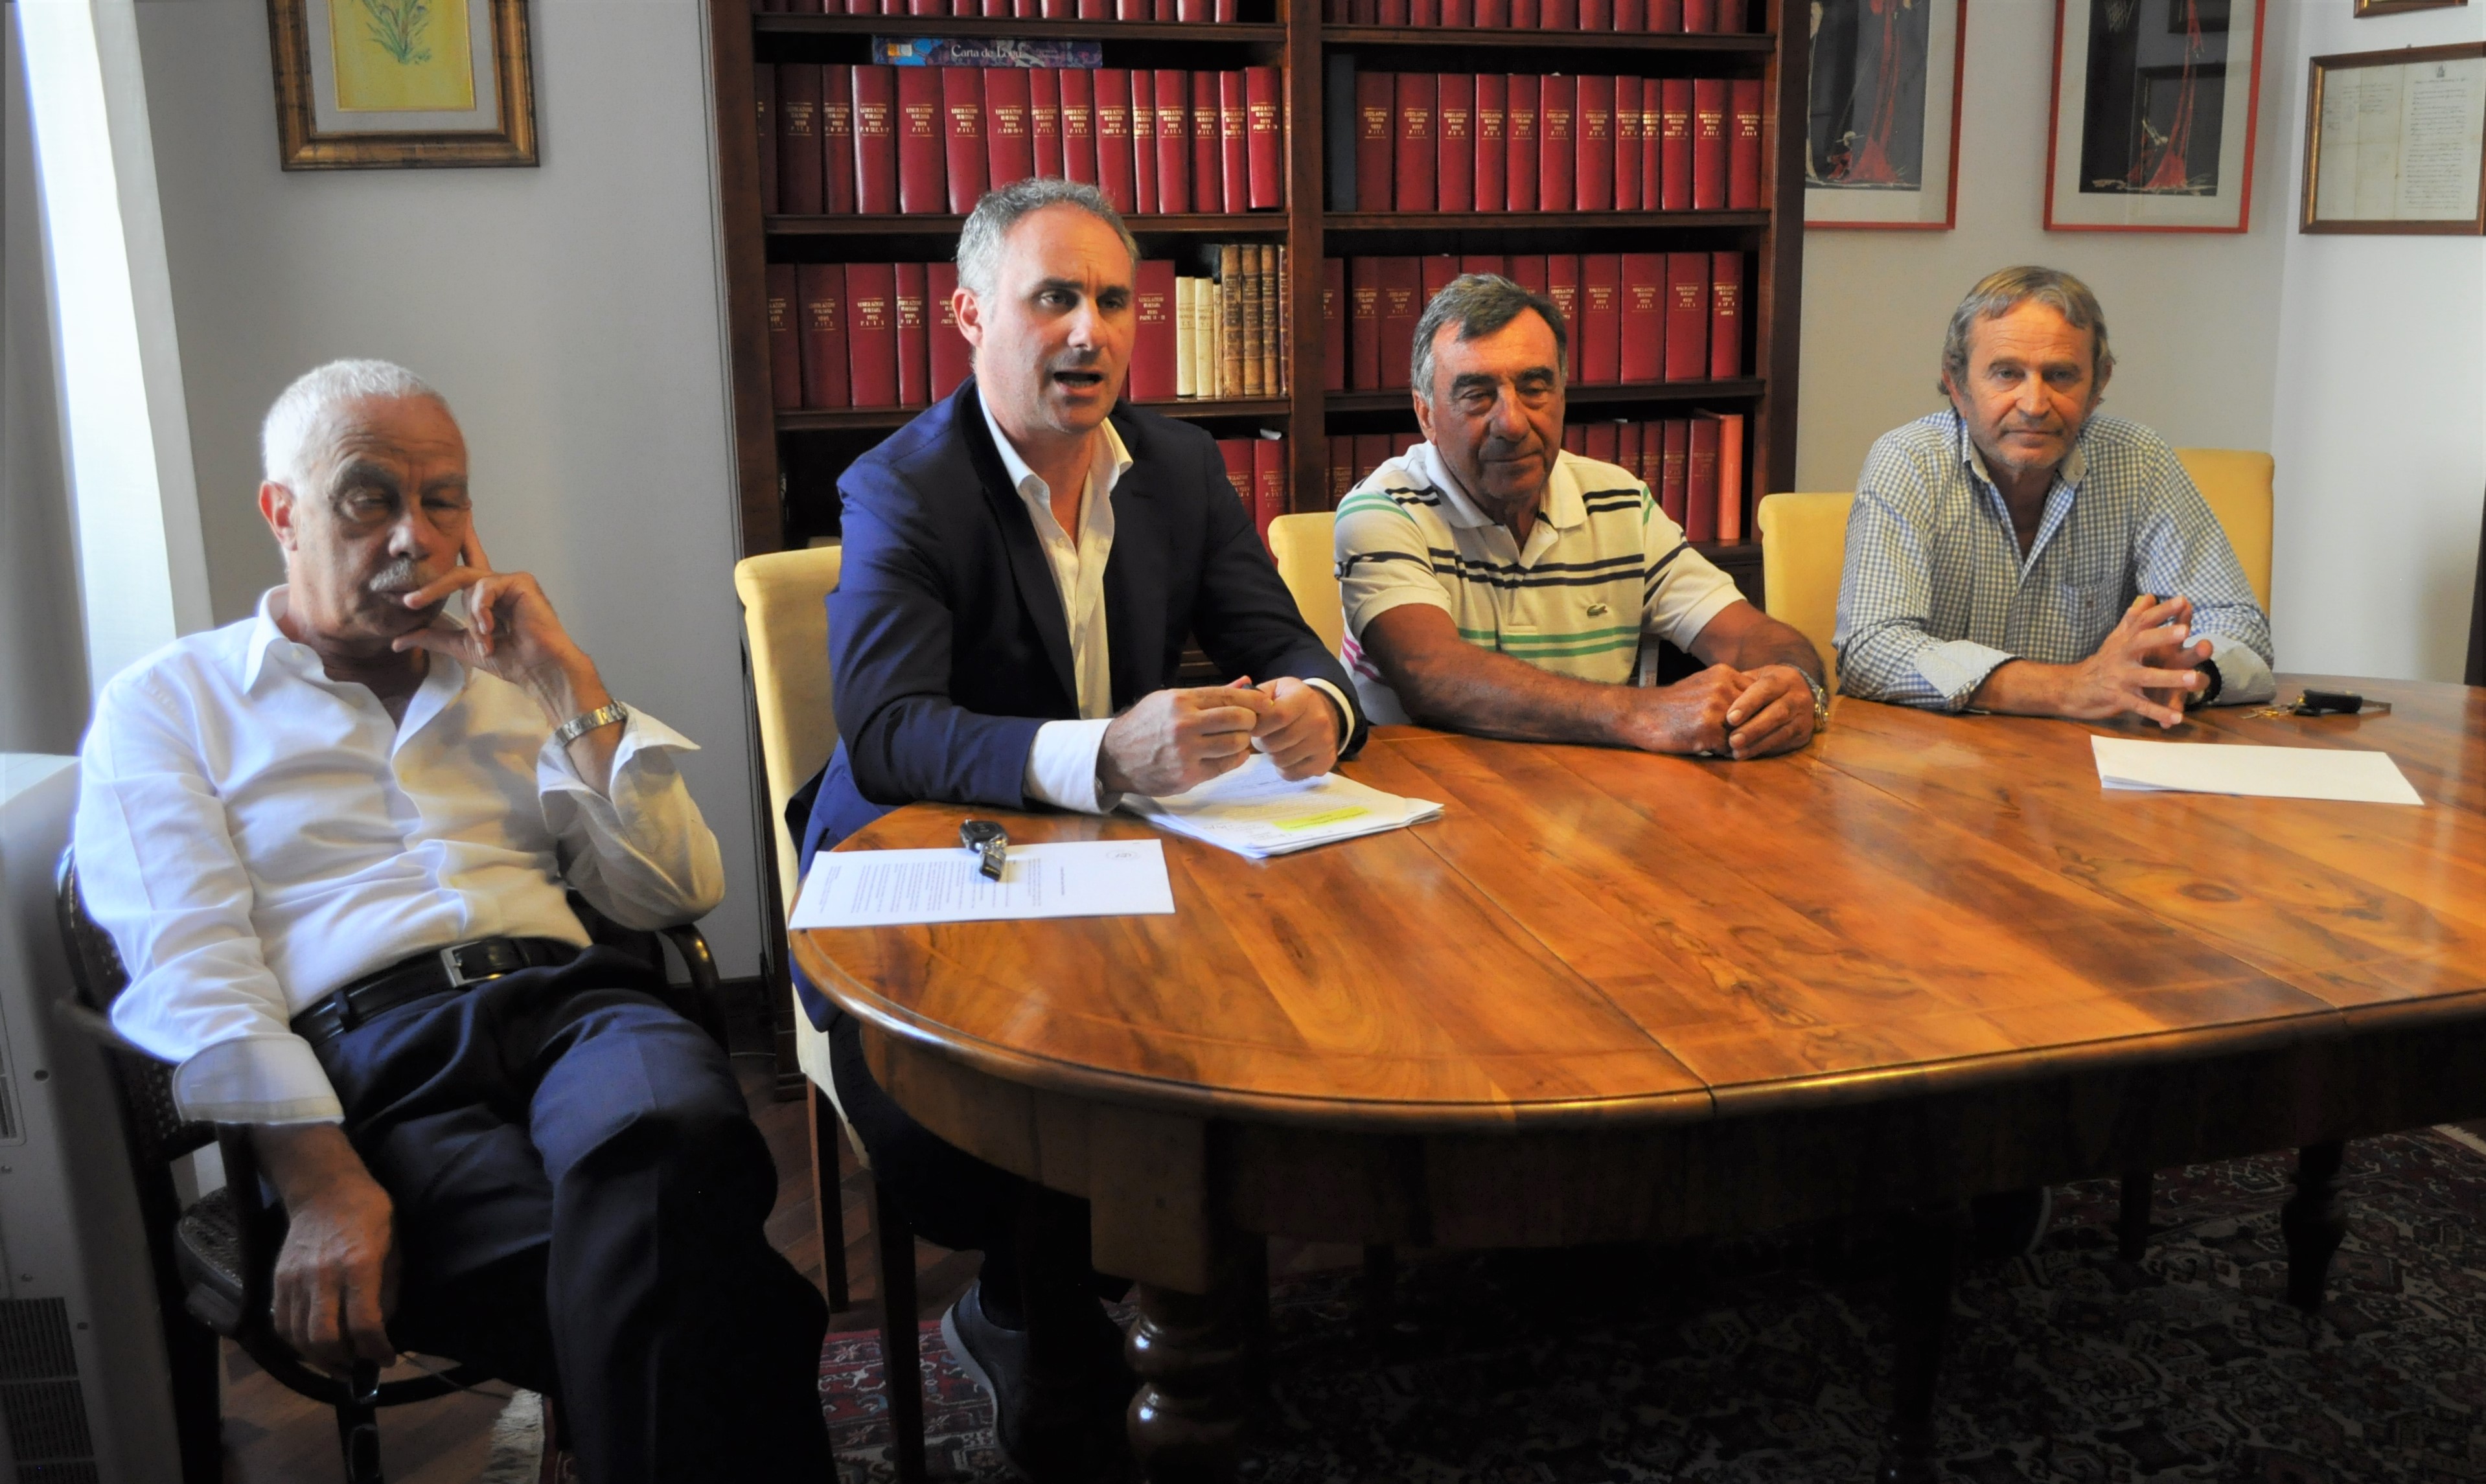 Olbia, la Camera penale della Gallura rifiuta le iscrizioni di 81 avvocati: arriva la protesta